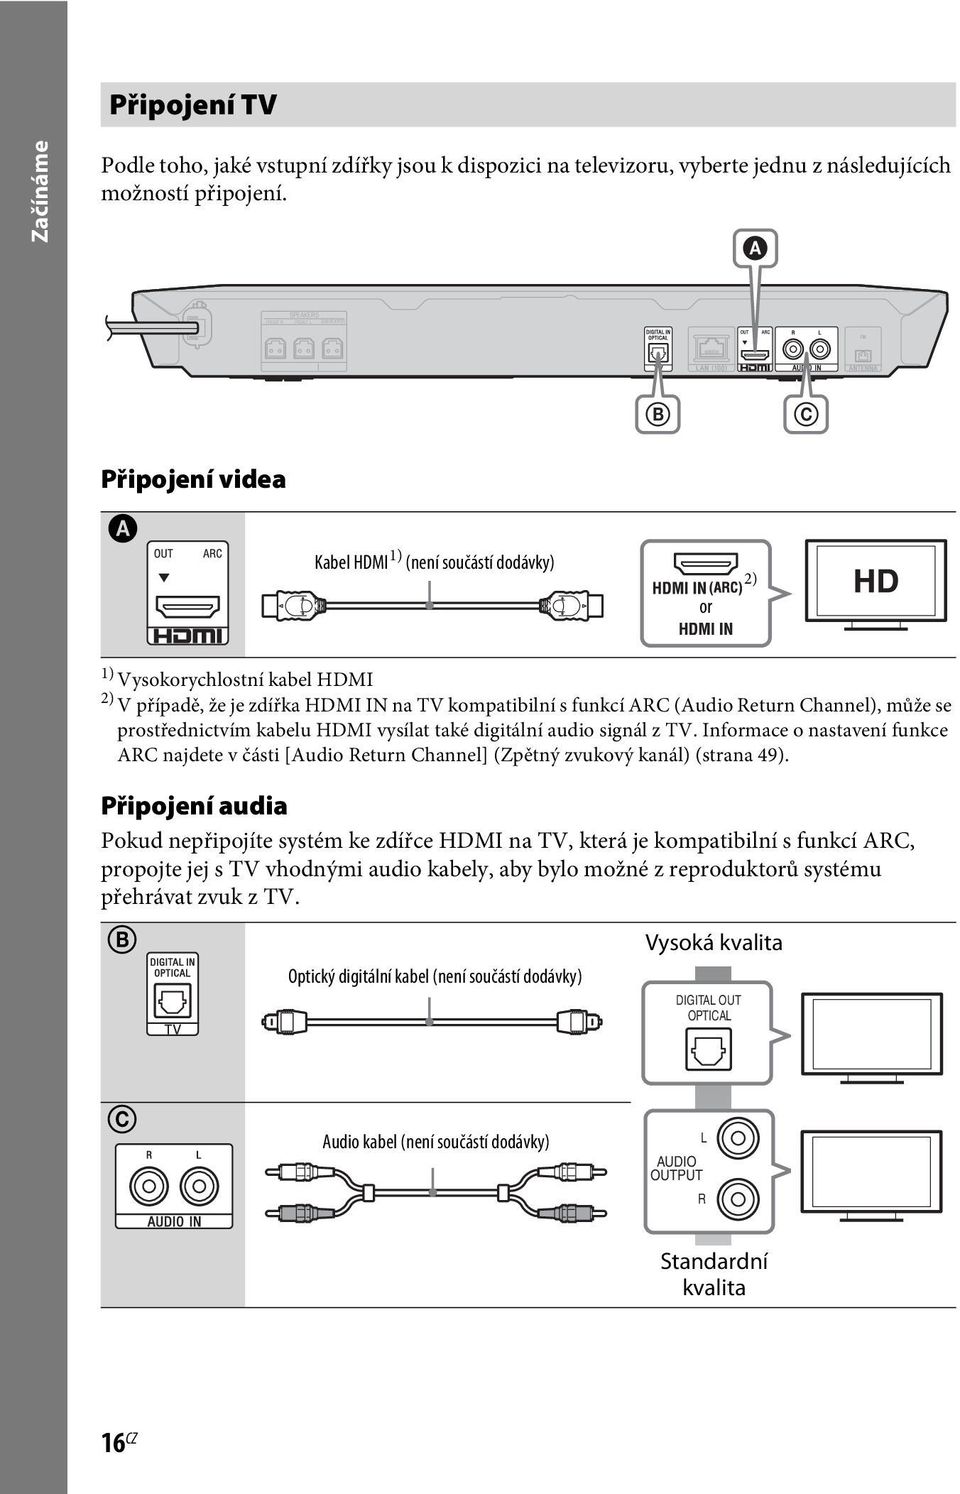 může se prostřednictvím kabelu HDMI vysílat také digitální audio signál z TV. Informace o nastavení funkce ARC najdete v části [Audio Return Channel] (Zpětný zvukový kanál) (strana 49).